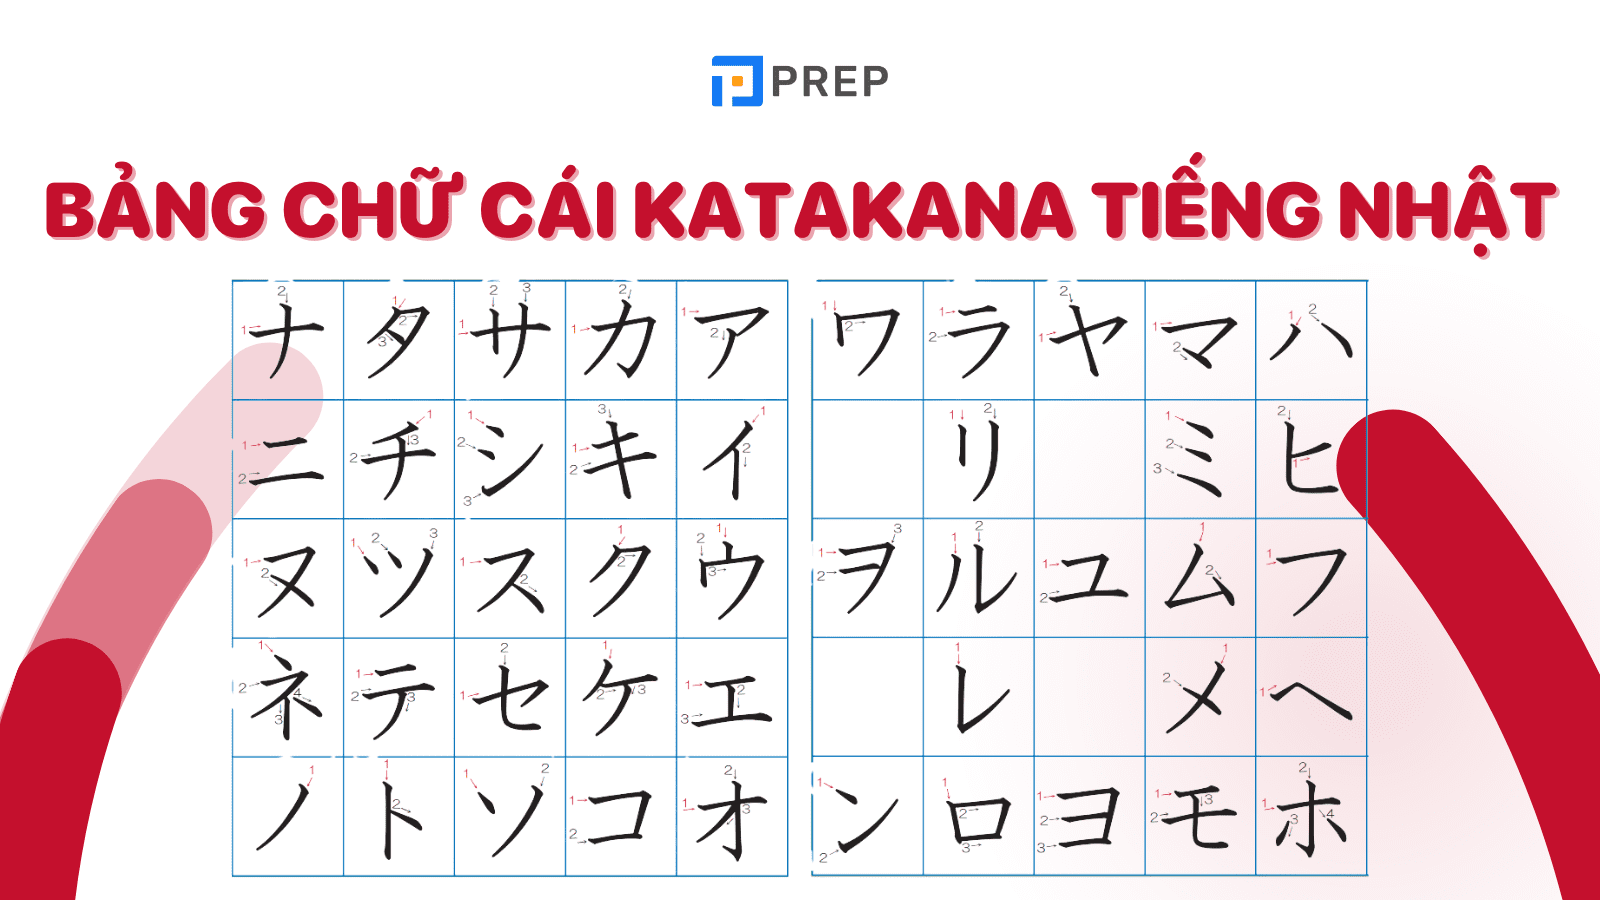 Chinh phục 46 ký tự trong bảng chữ cái Katakana chỉ trong 4 ngày